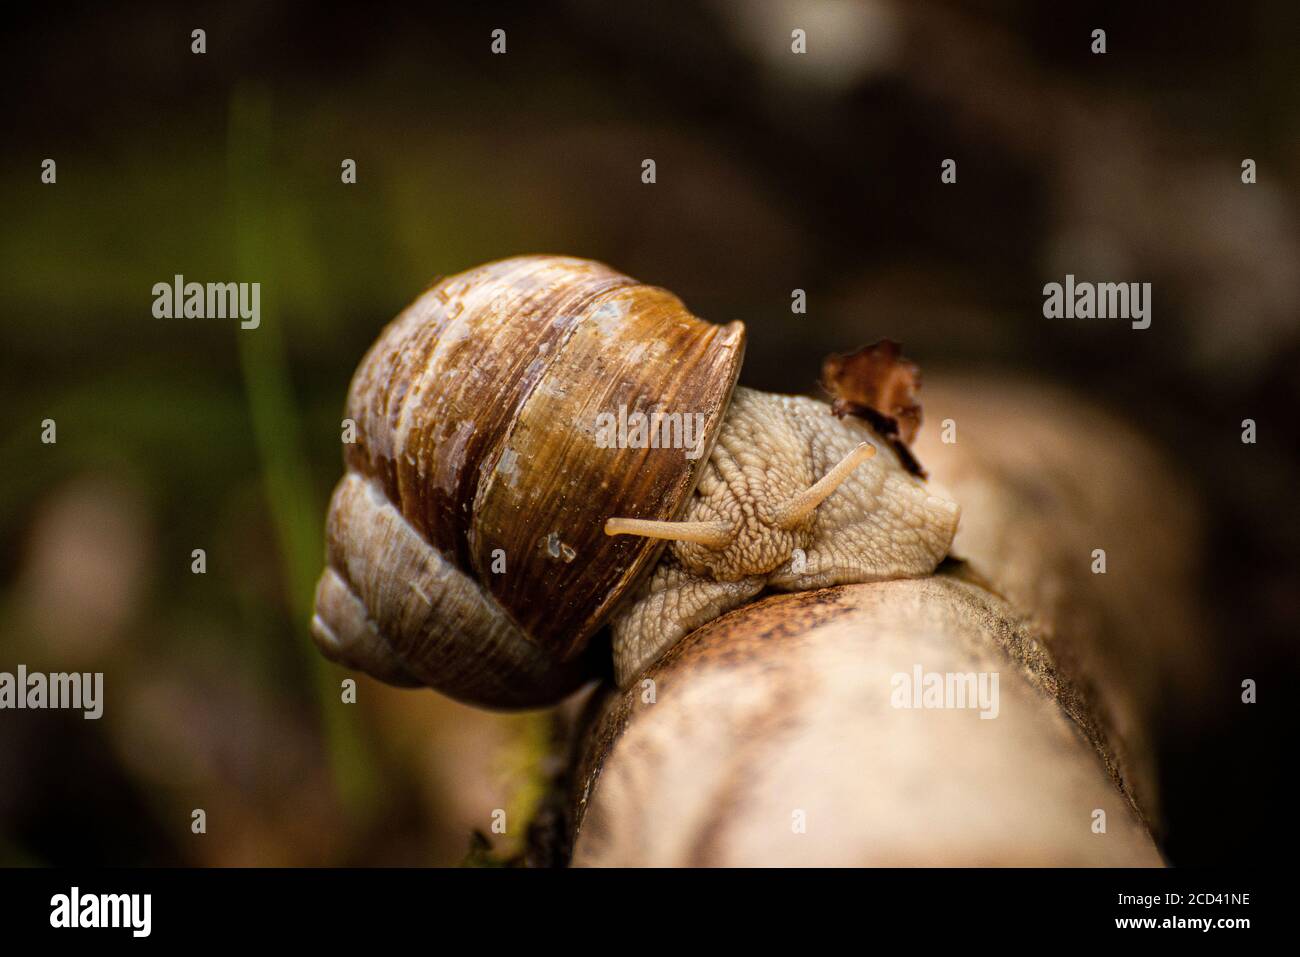 A snail of a branch. // Eine Weinbergschnecke kriechend auf einem Ast. Stock Photo